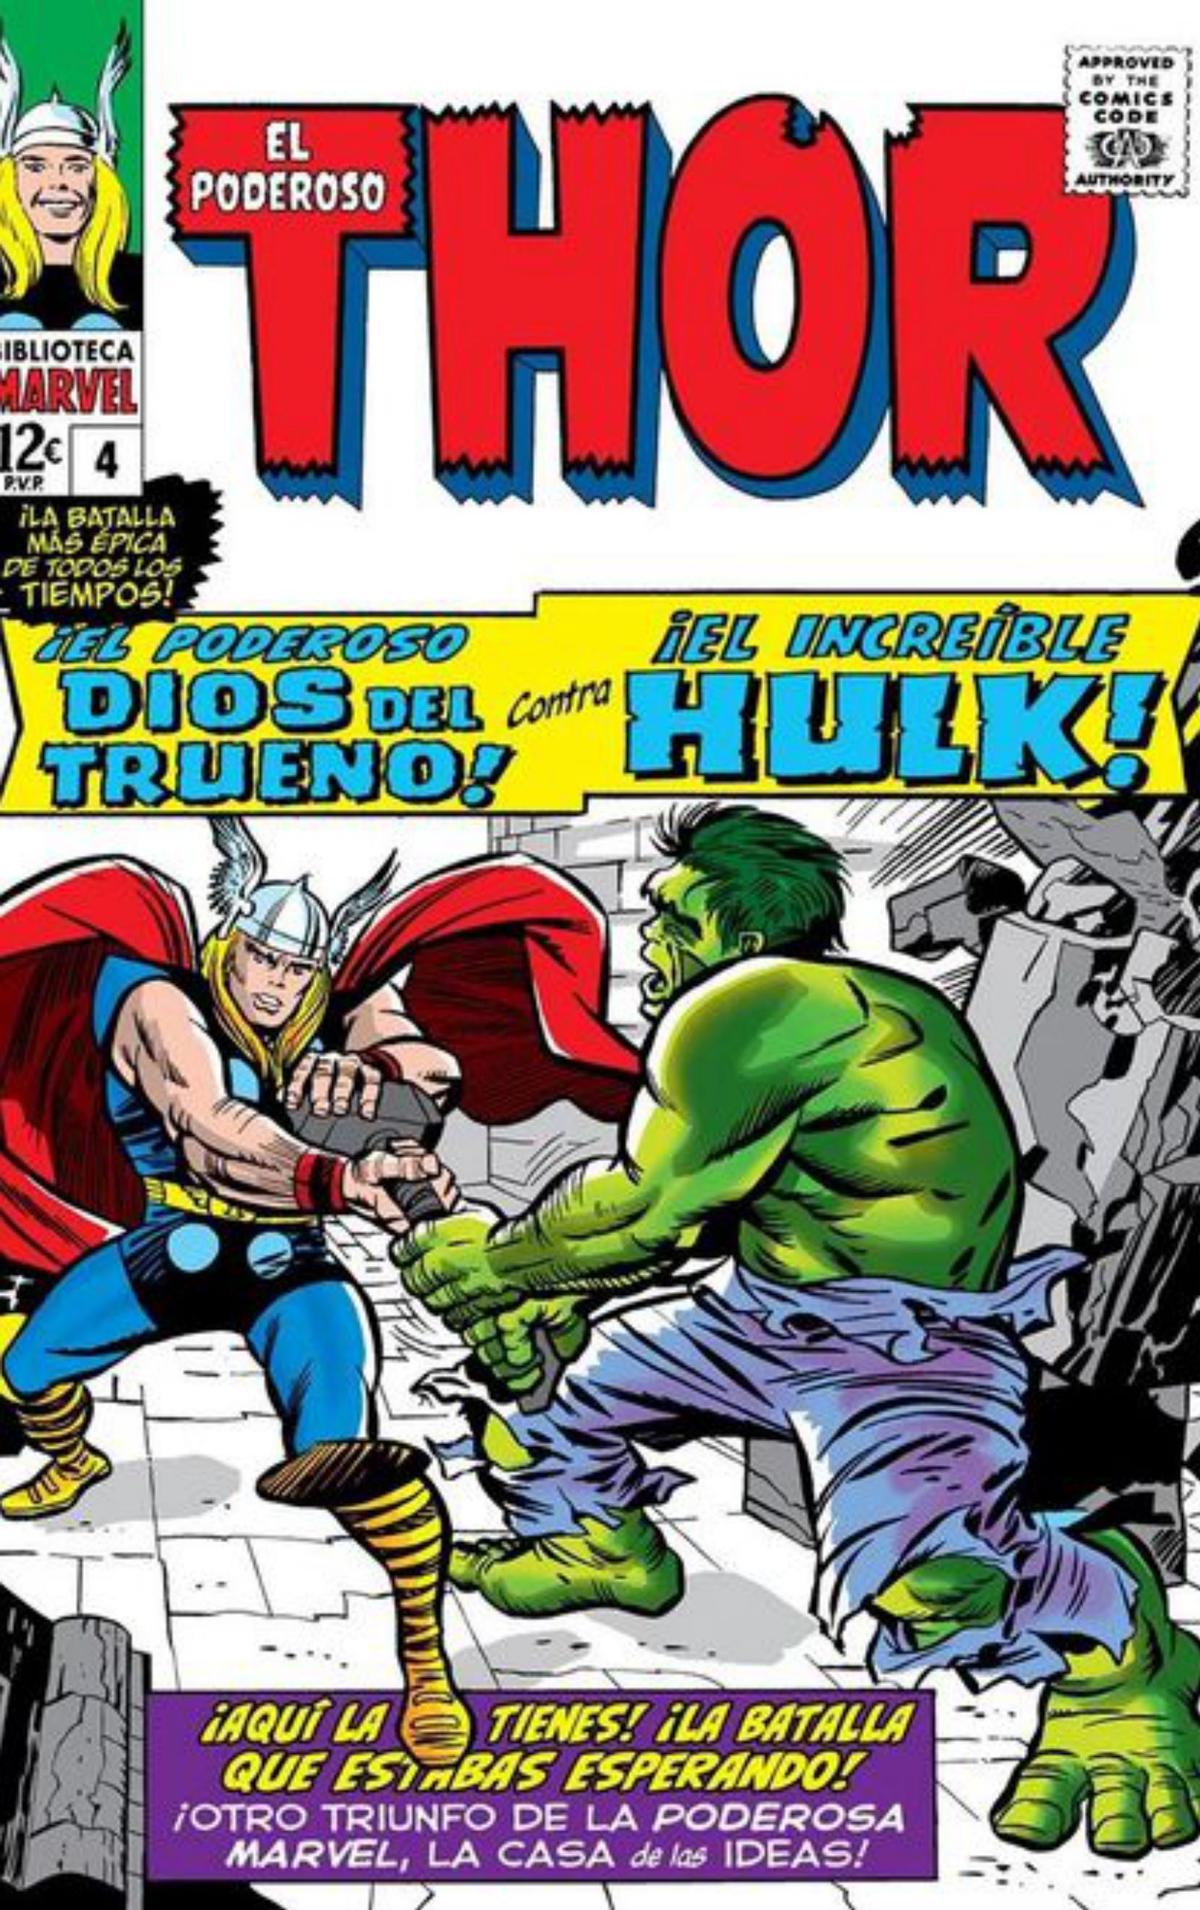 Thor y Hulk miden sus increíbles fuerzas